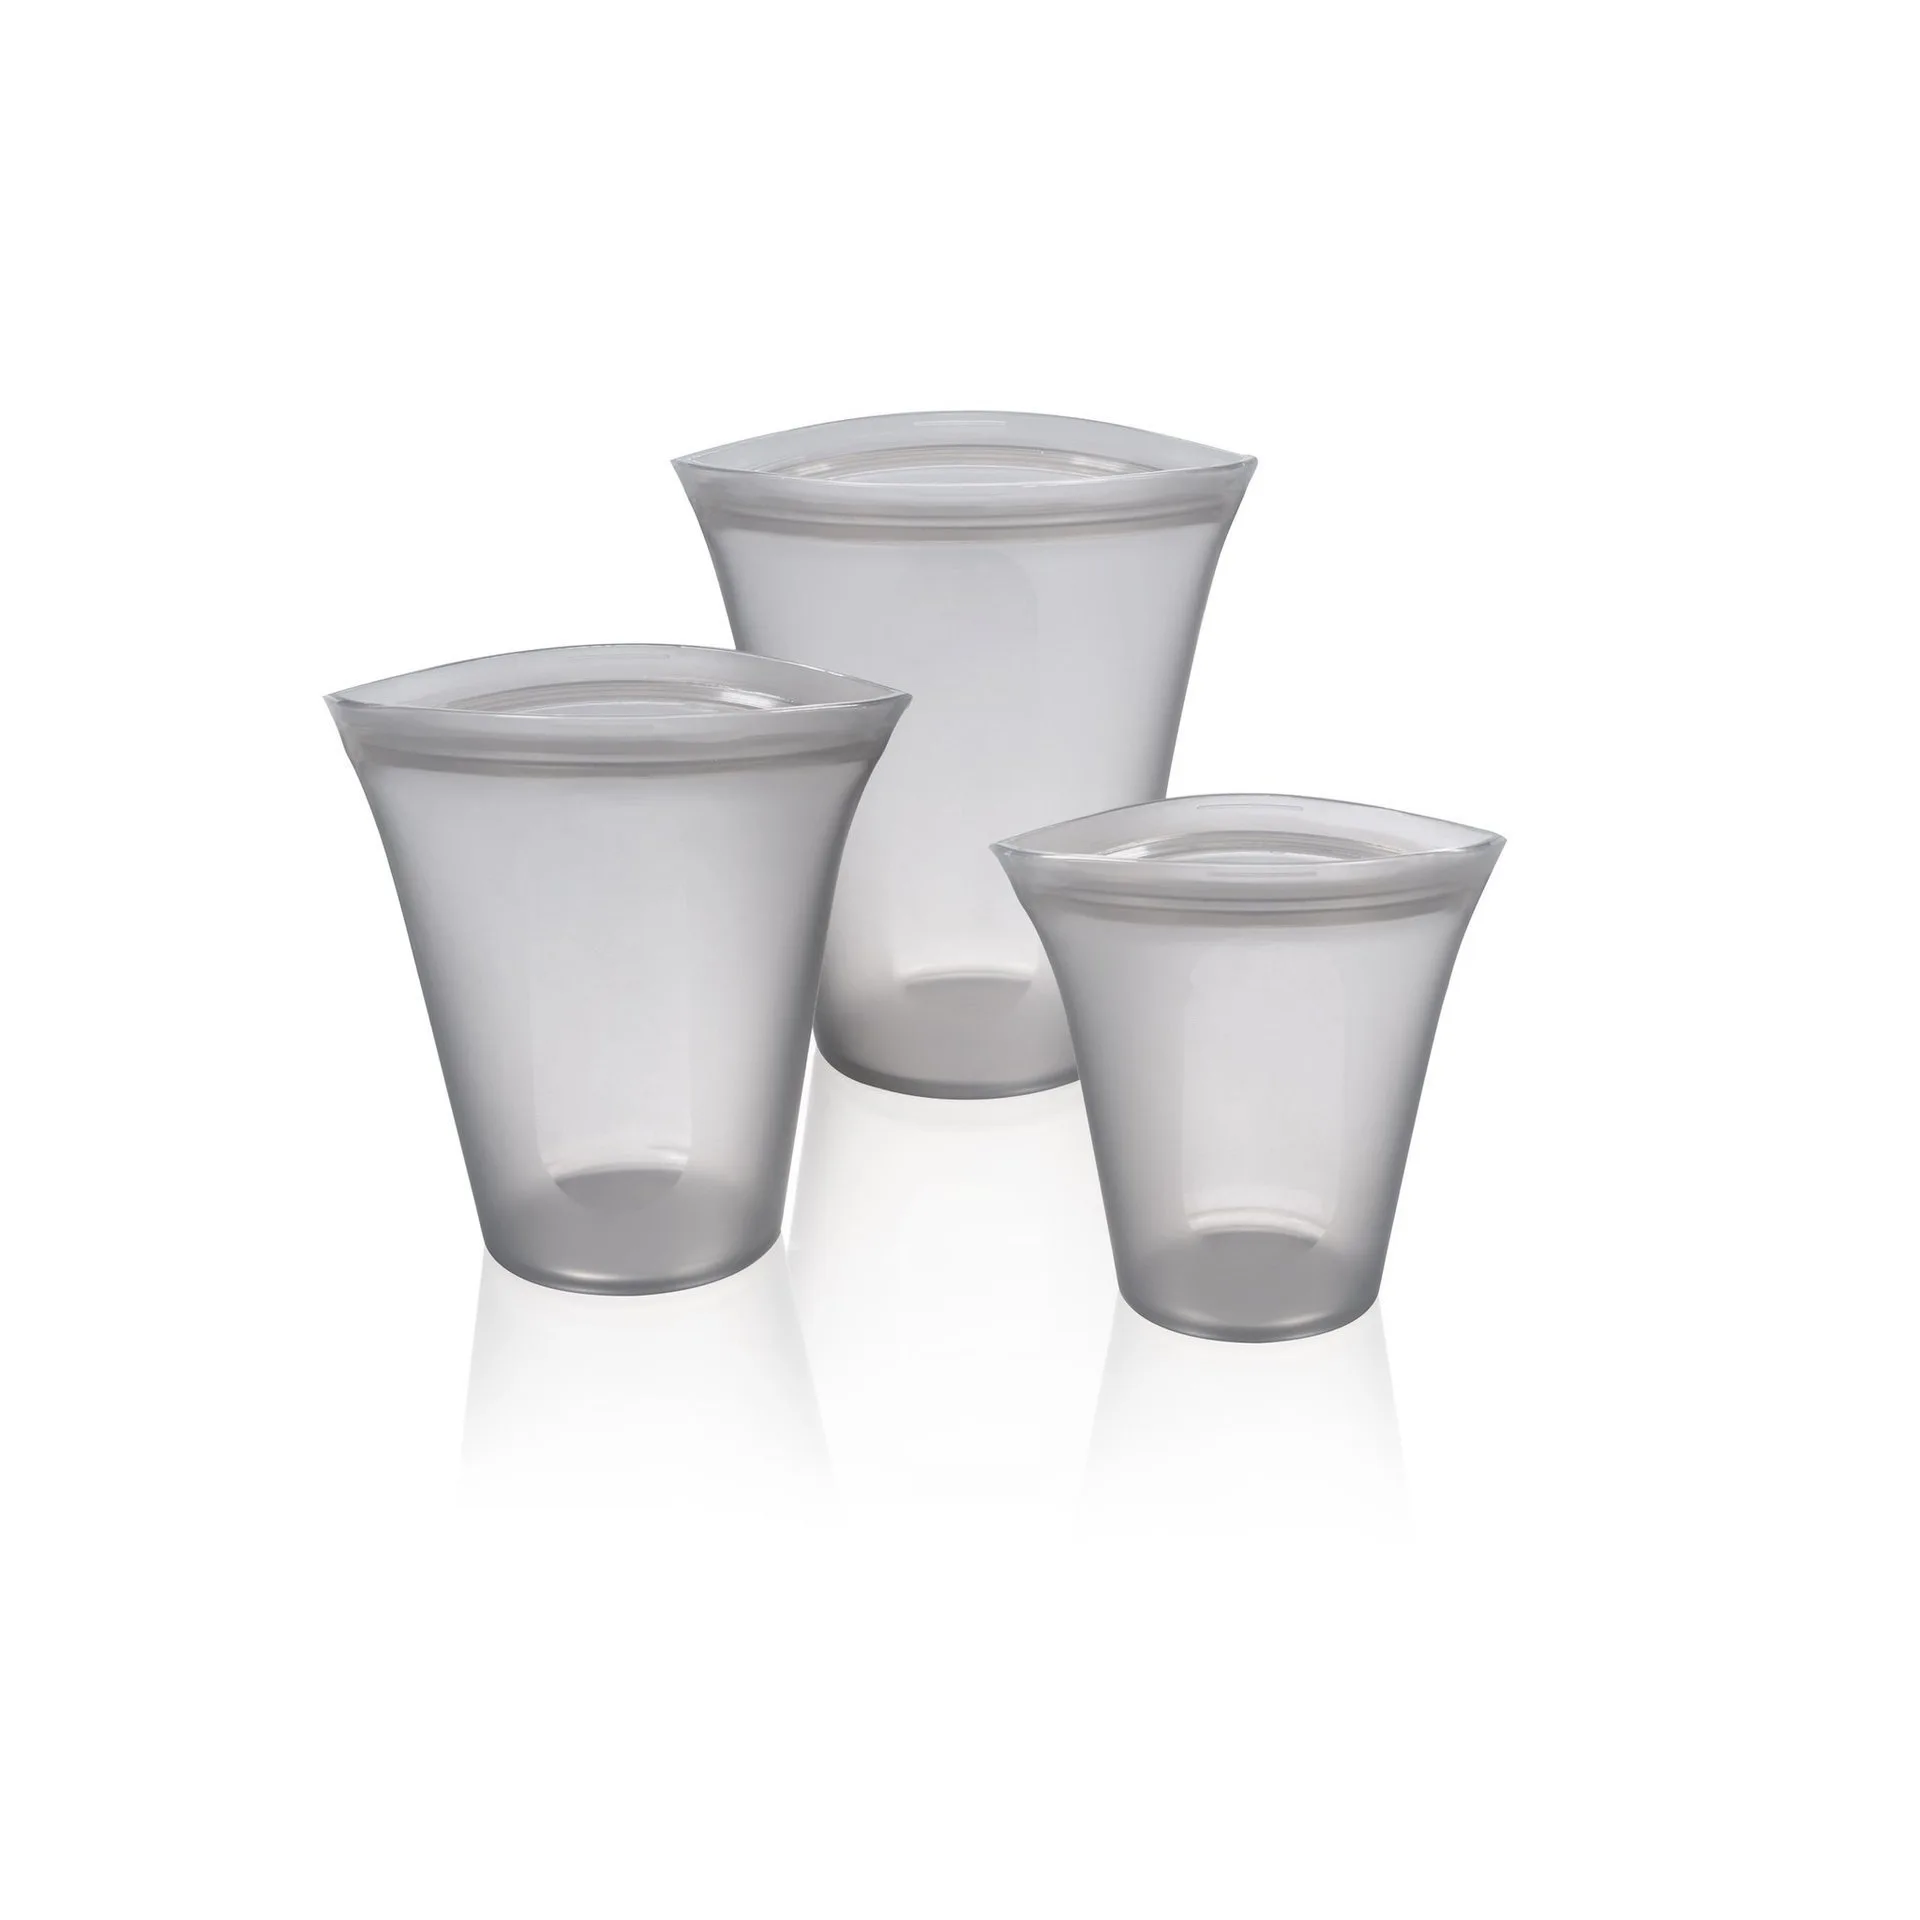 2 шт/3 шт кухонные многоразовые силиконовые герметичные контейнеры с замком-молнией, набор оригинальных силиконовых чаш для хранения еды, чашки, сумки, набор - Цвет: 3PCS Cups Grey